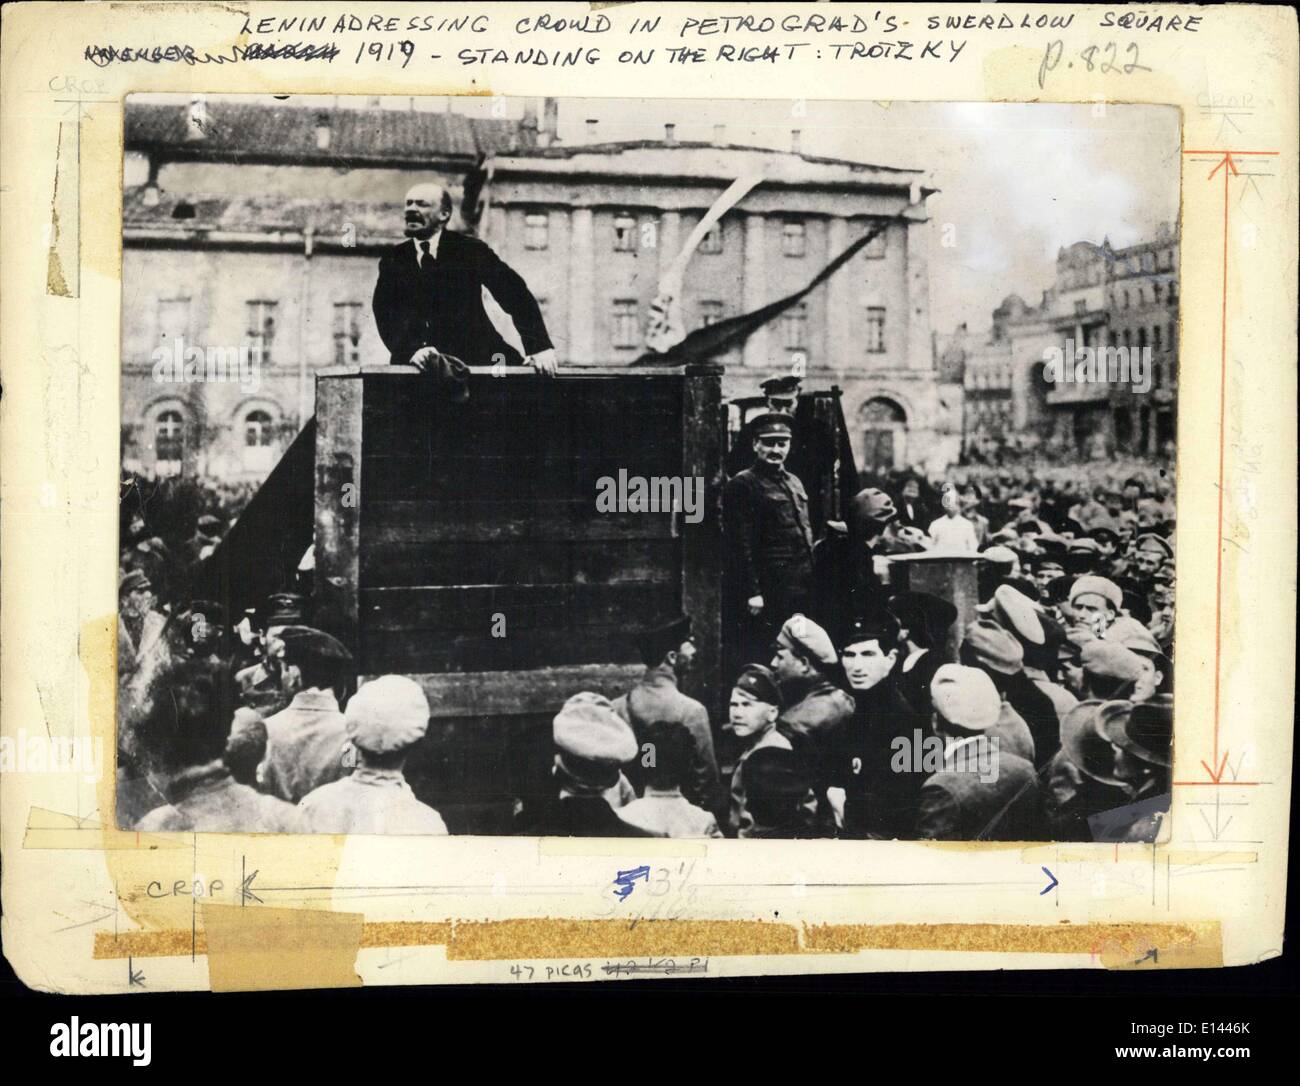 4. April 2012 - Lenin Adressierung Publikum In Petrograd die Swerdlow Platz-1919 - stehend auf der rechten Seite - Trotzky. Stockfoto